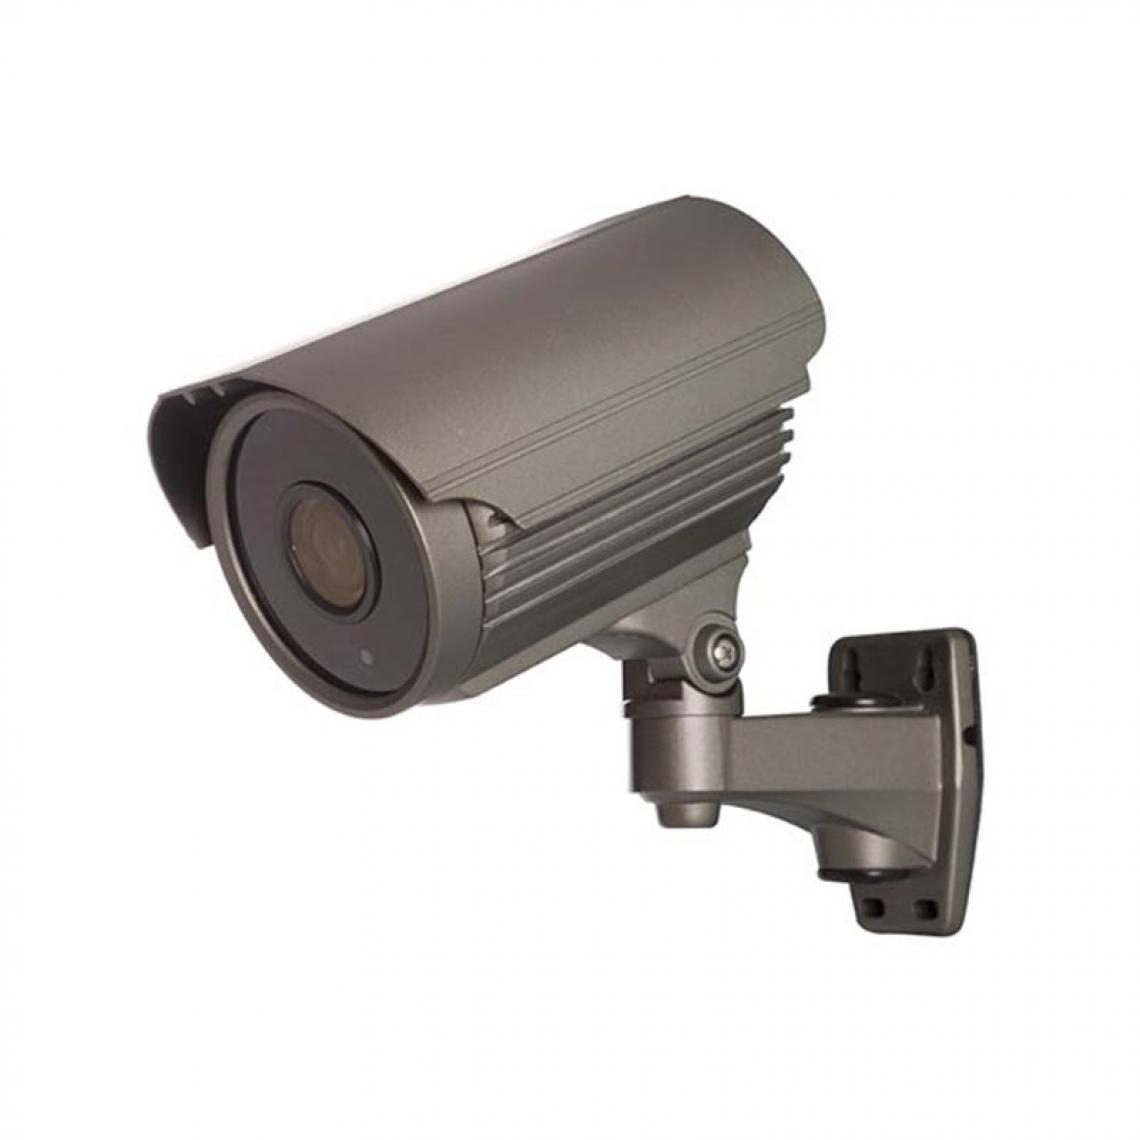 Perel - Caméra Multi Protocoles - Hd-Tvi / Cvi / Ahd / Analogique - Extérieur - Cylindrique - Varifocal - 1080P - Caméra de surveillance connectée